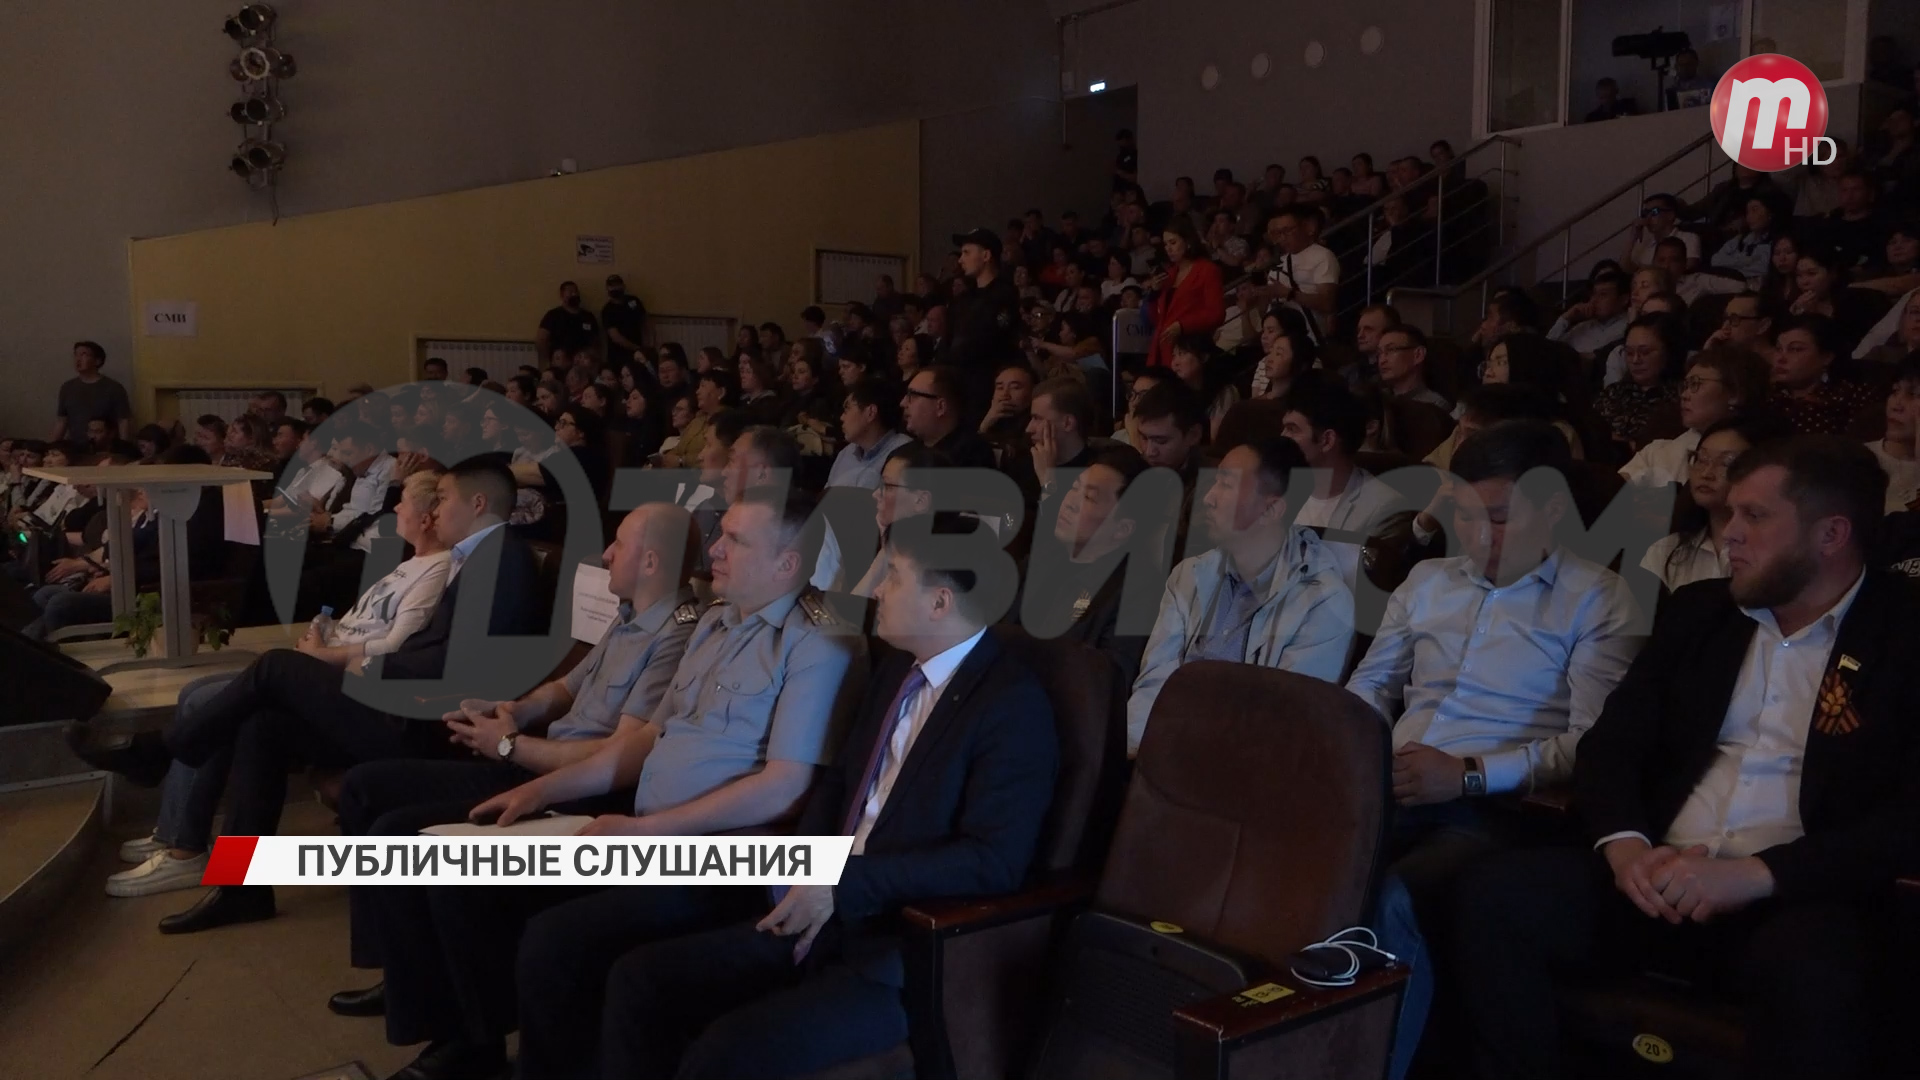 В Улан-Удэ прошли публичные слушания по участку для объекта ФСИН